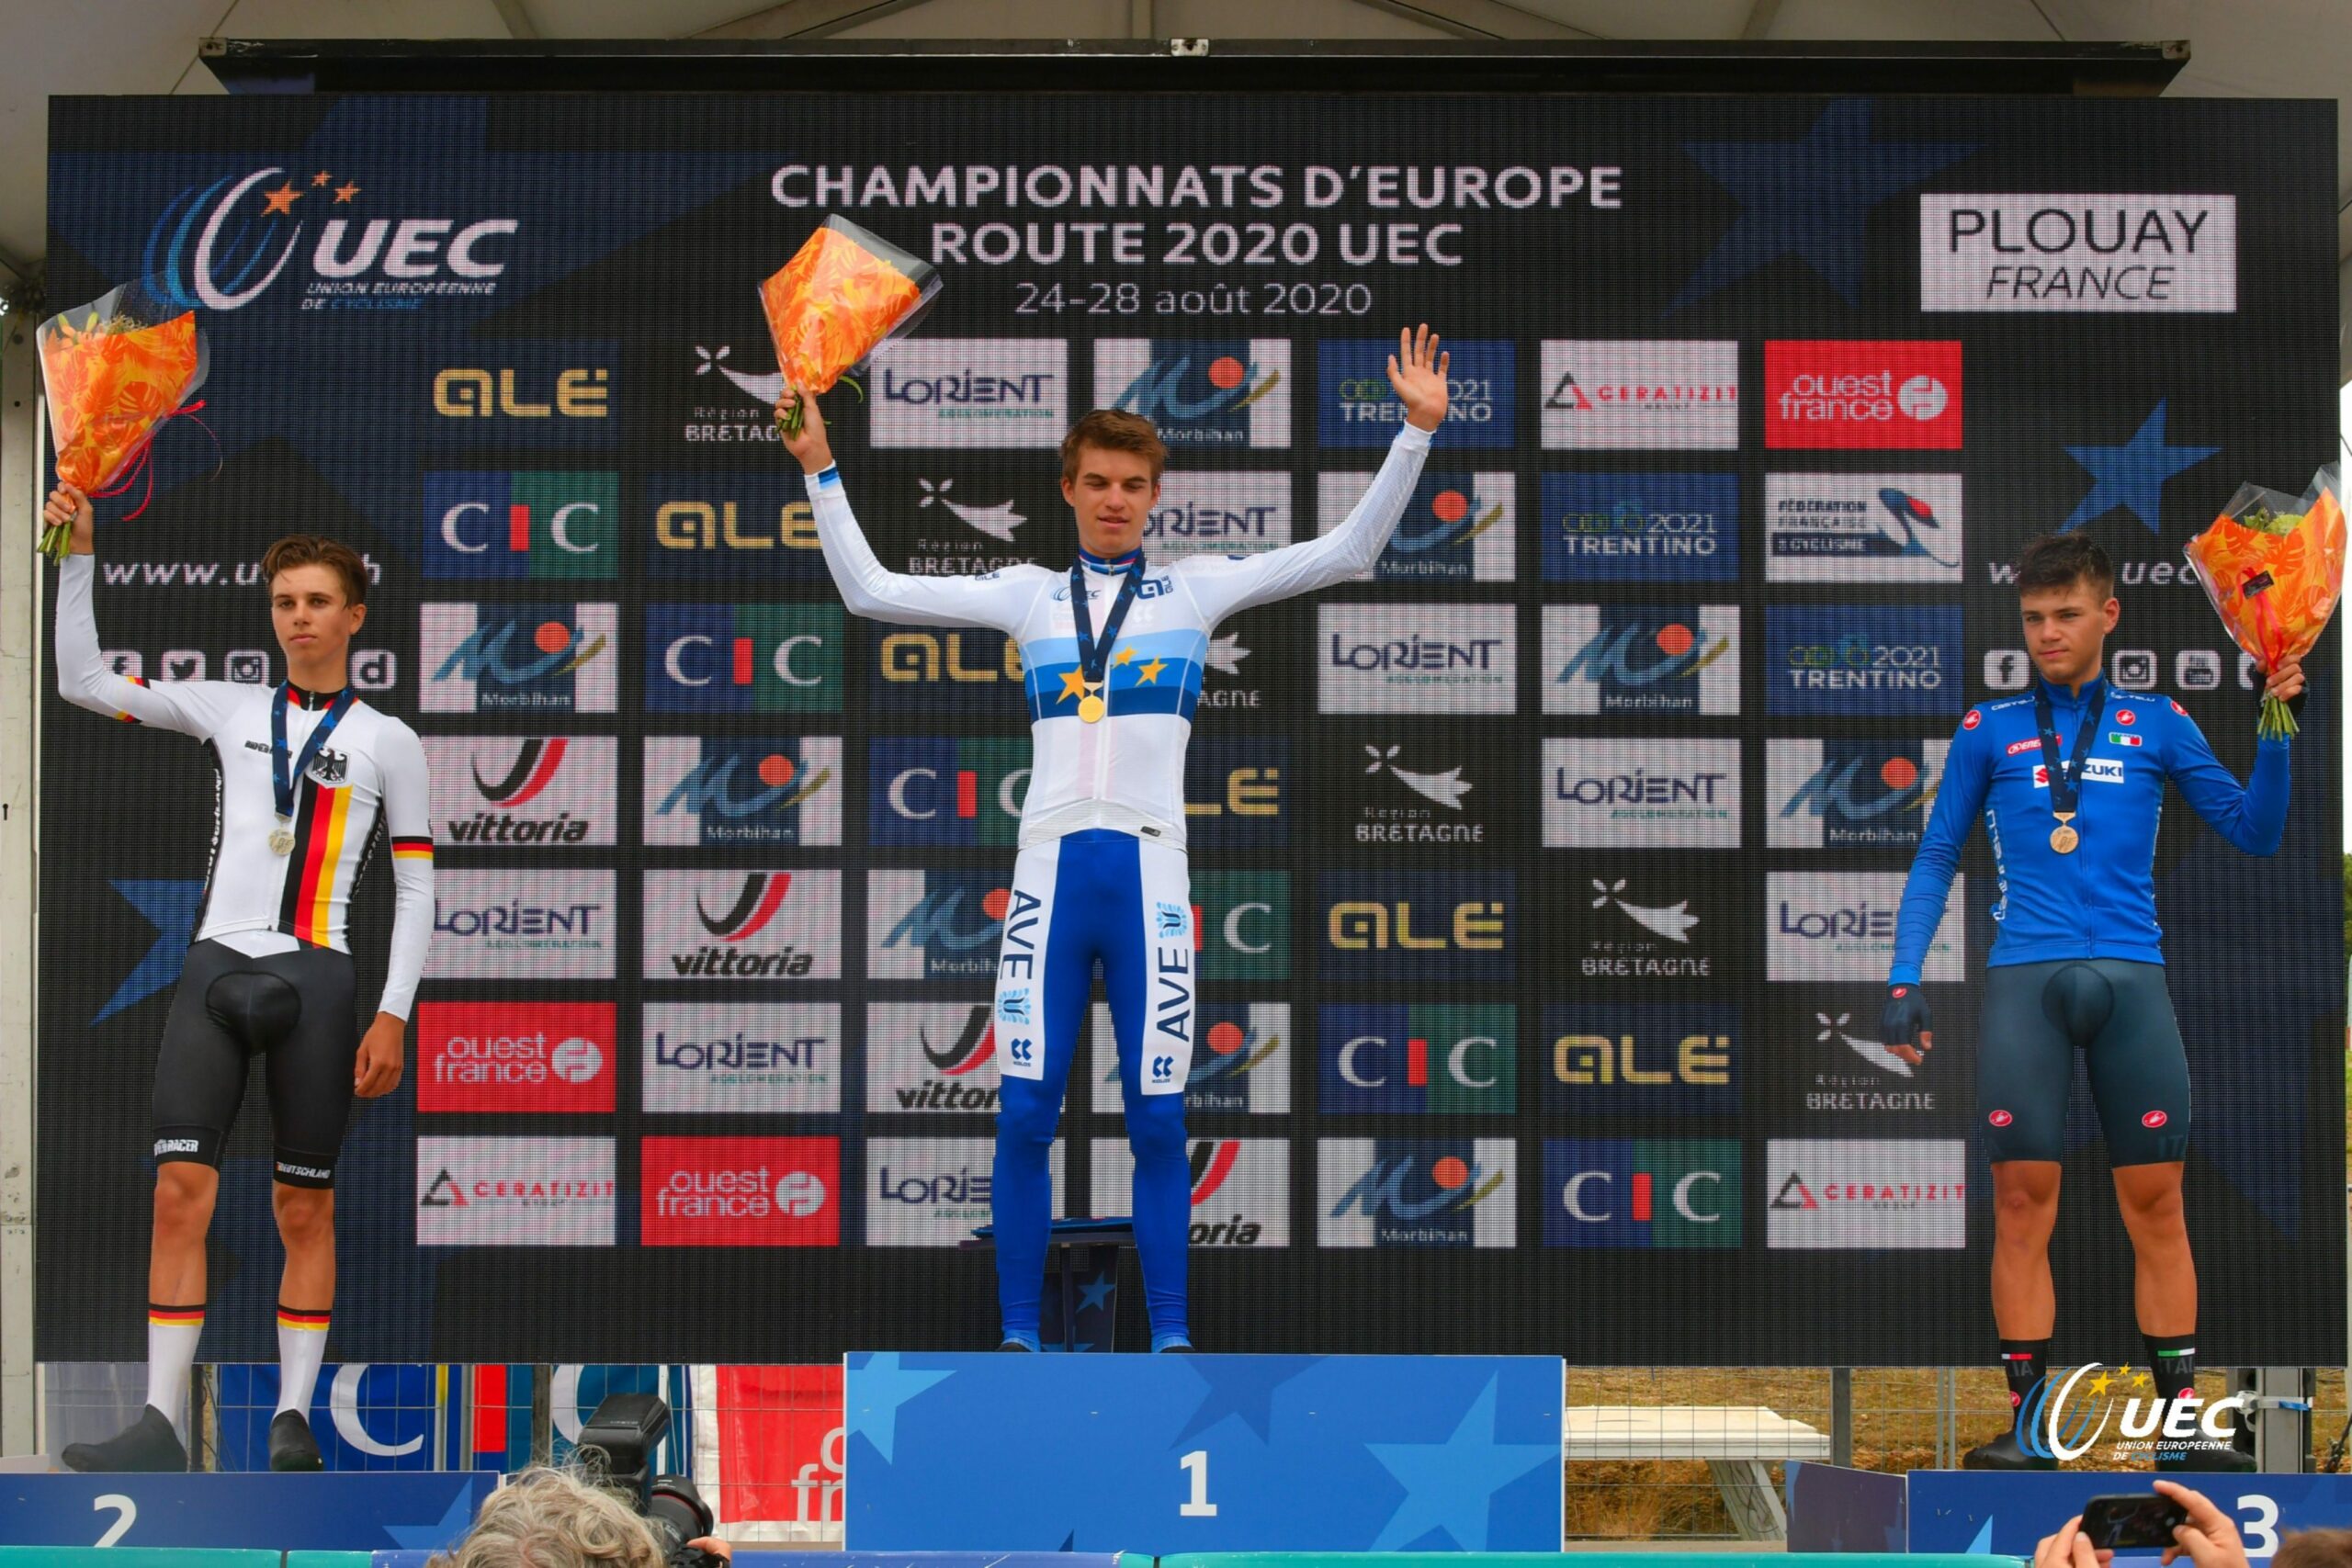 Матиас Вачек неожиданно выиграл юниорскую ITT на чемпионате Европы по велоспорту